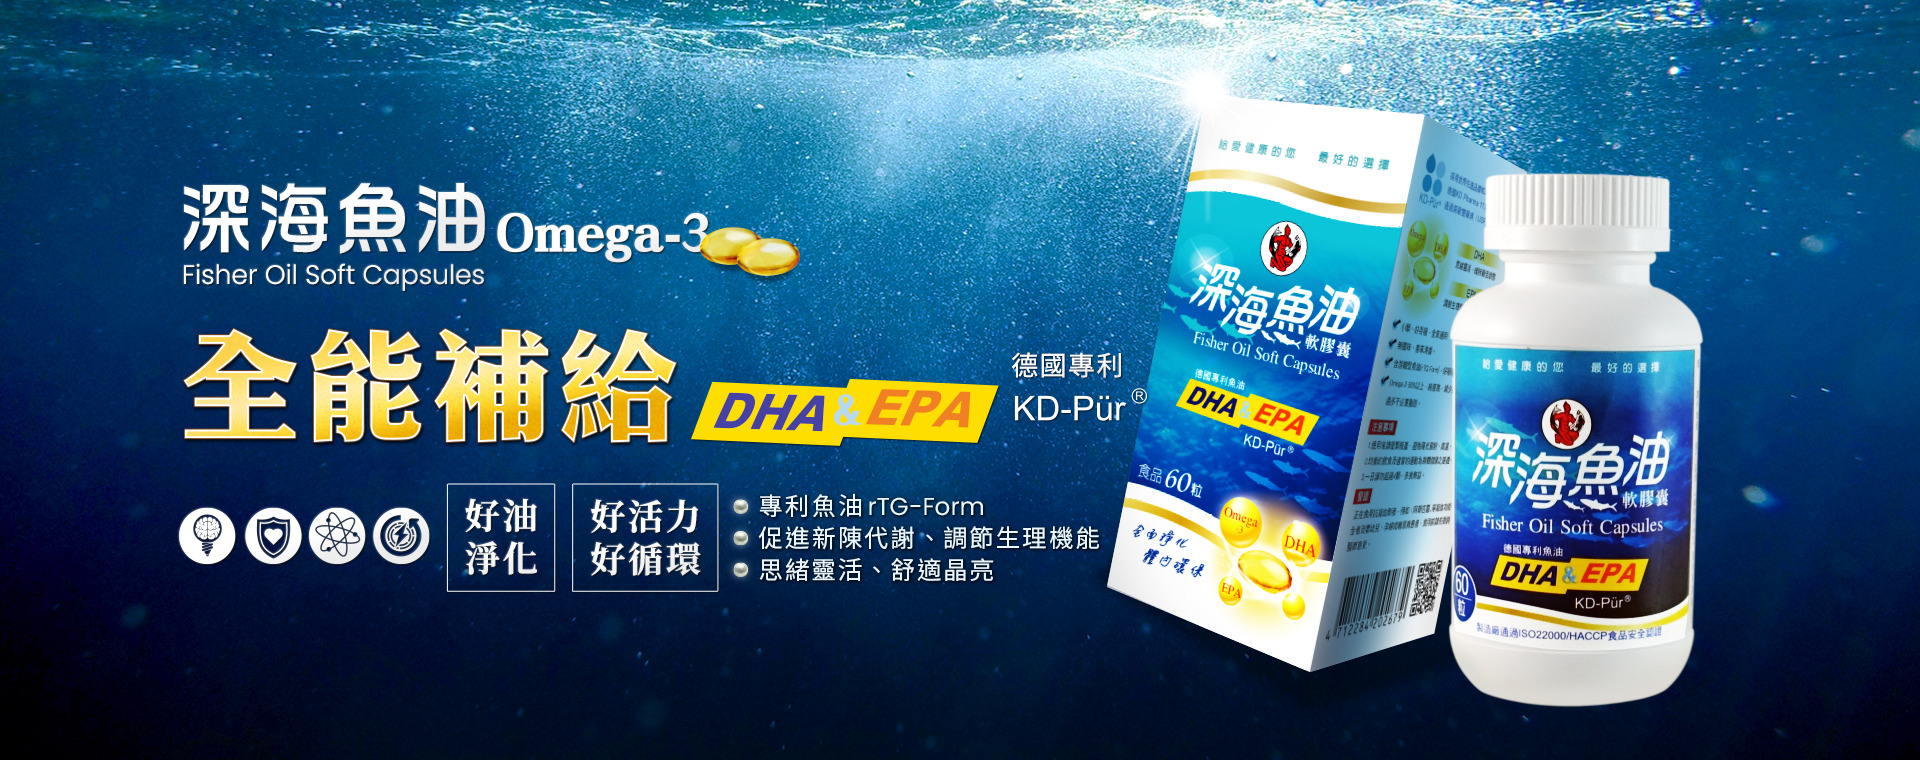 深海魚油軟膠囊 德國KD藥廠專利魚油 游離型魚油 高純度Omega-3